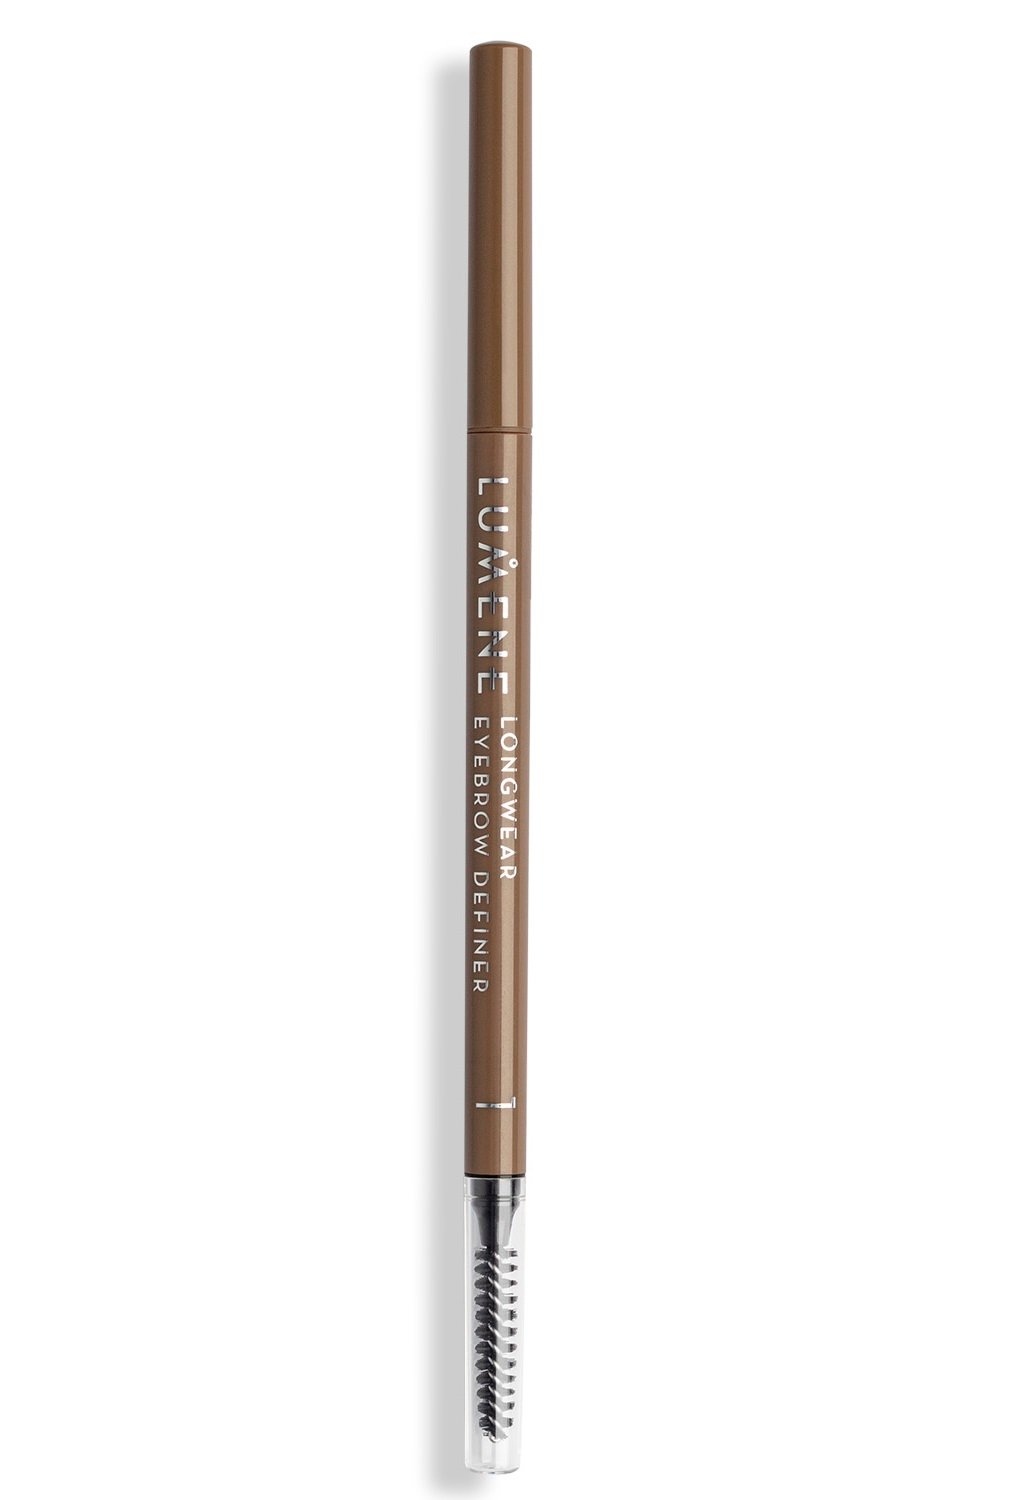 Олівець для брів Lumene Longwear Eyebrow Definer Ash Blonde тон 1, 0.09 г (8000019685960) - фото 2